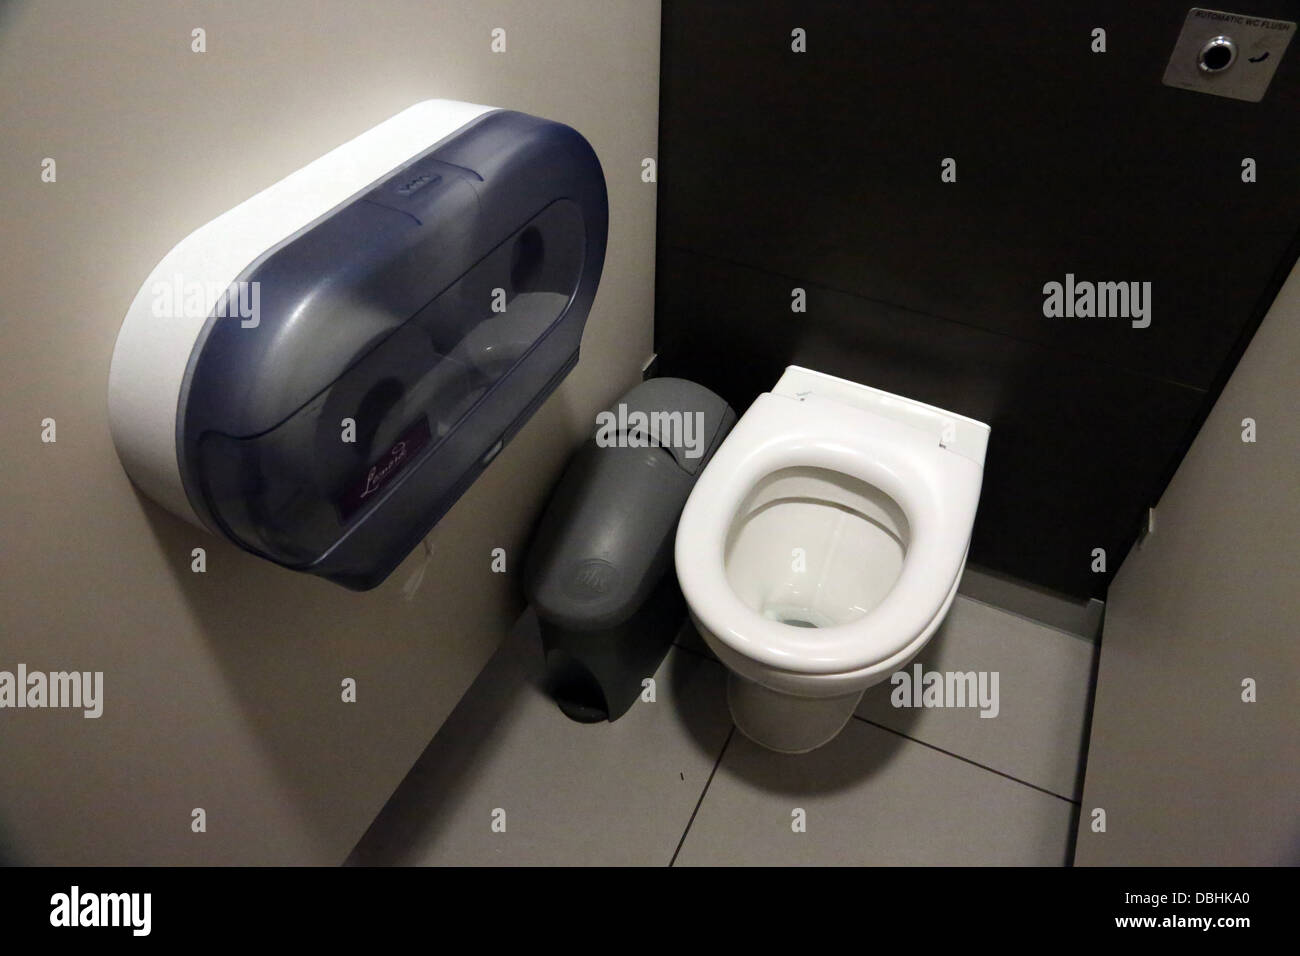 Toilettes publiques automatiques avec niveau de la station d'autoroute Angleterre Banque D'Images